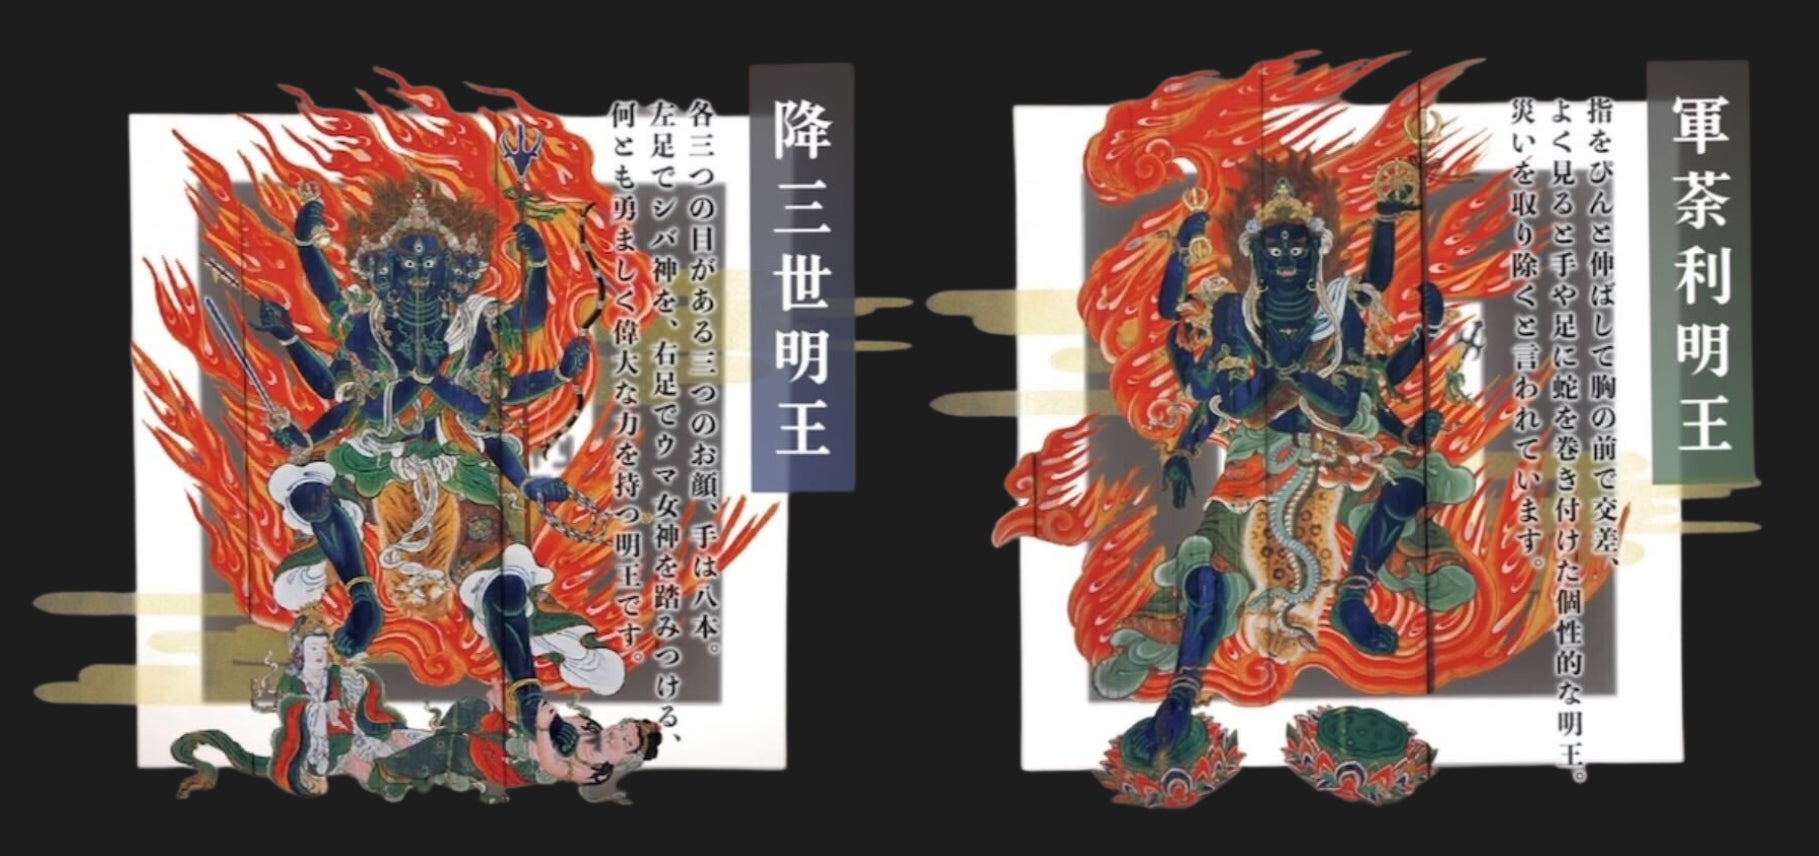 ProVision、京都府にある世界遺産の仁和寺へ五大明王が表示されるARカードを作成